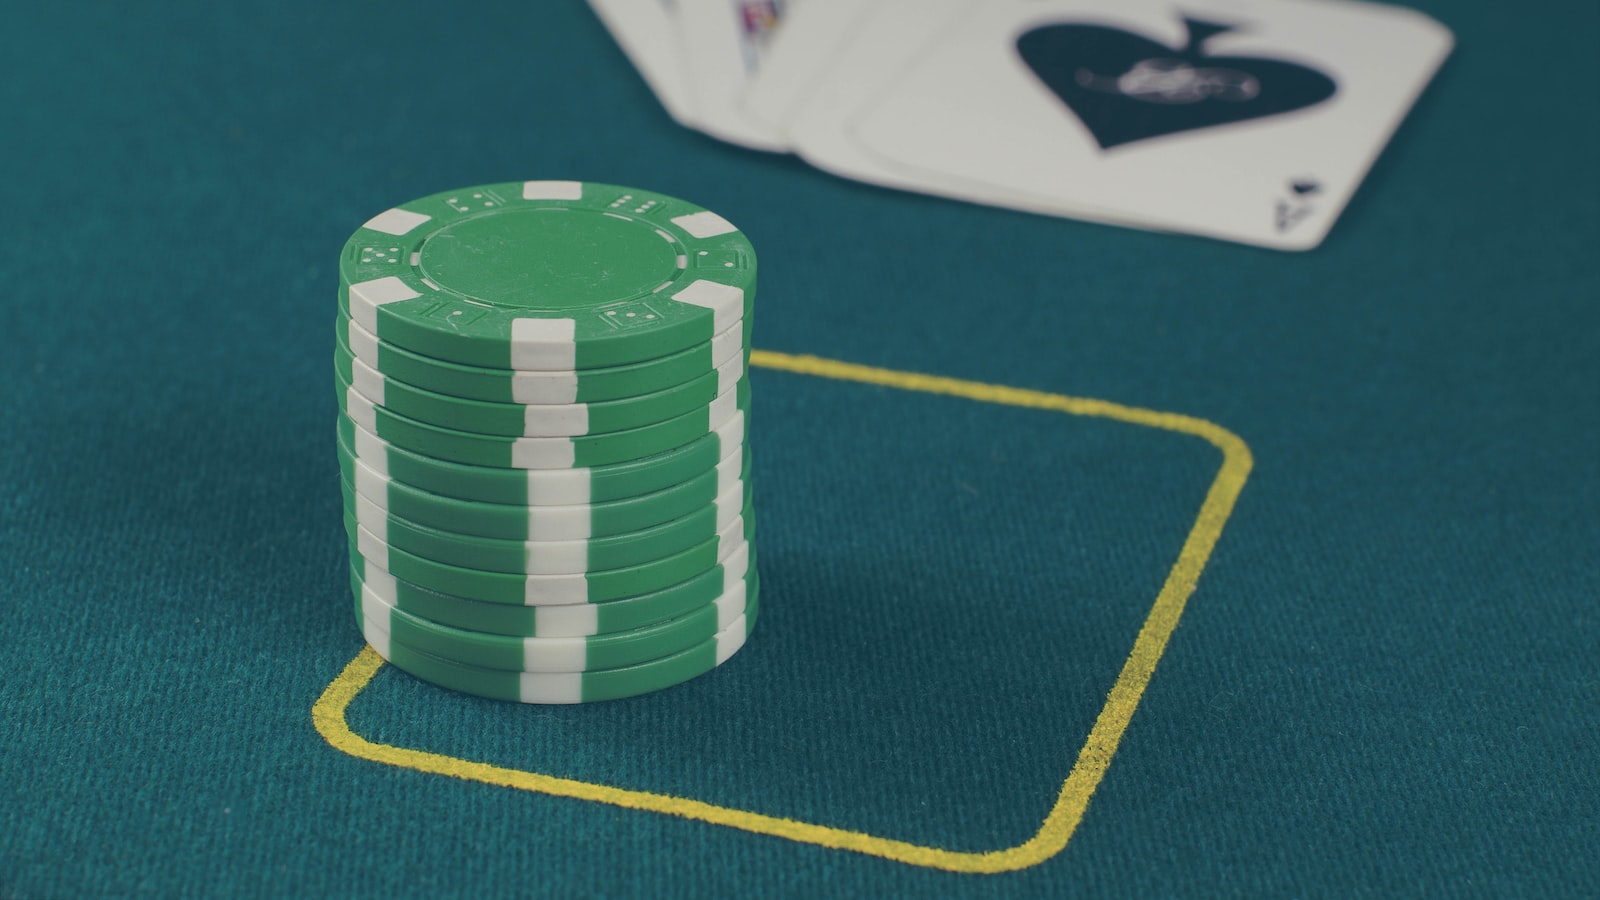 3. Understanding the Casino Games